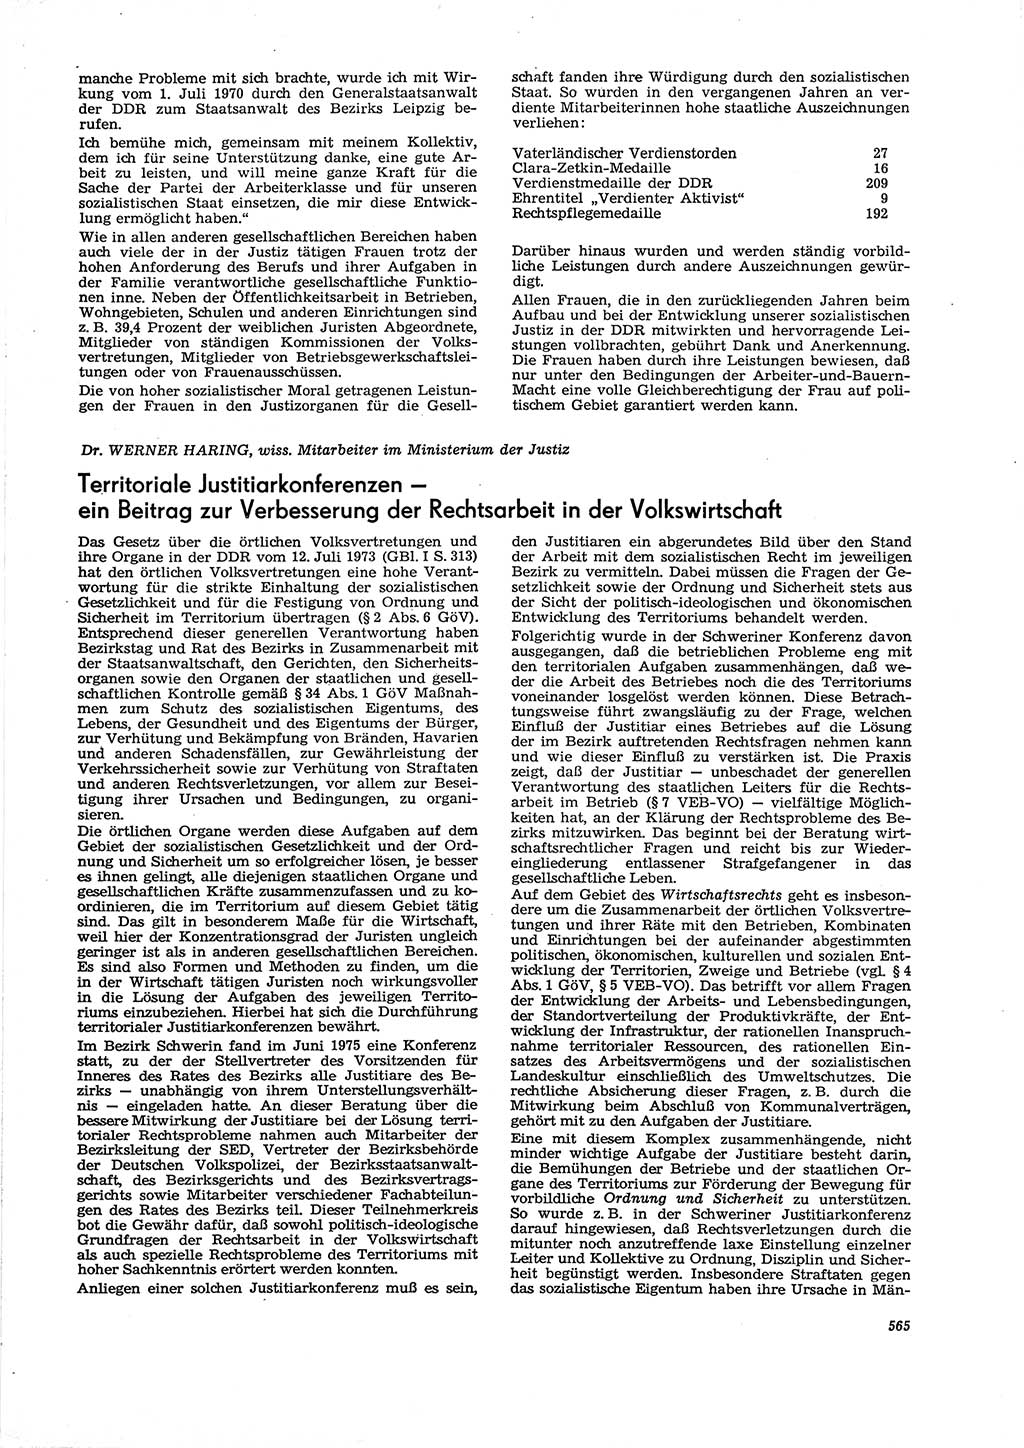 Neue Justiz (NJ), Zeitschrift für Recht und Rechtswissenschaft [Deutsche Demokratische Republik (DDR)], 29. Jahrgang 1975, Seite 565 (NJ DDR 1975, S. 565)